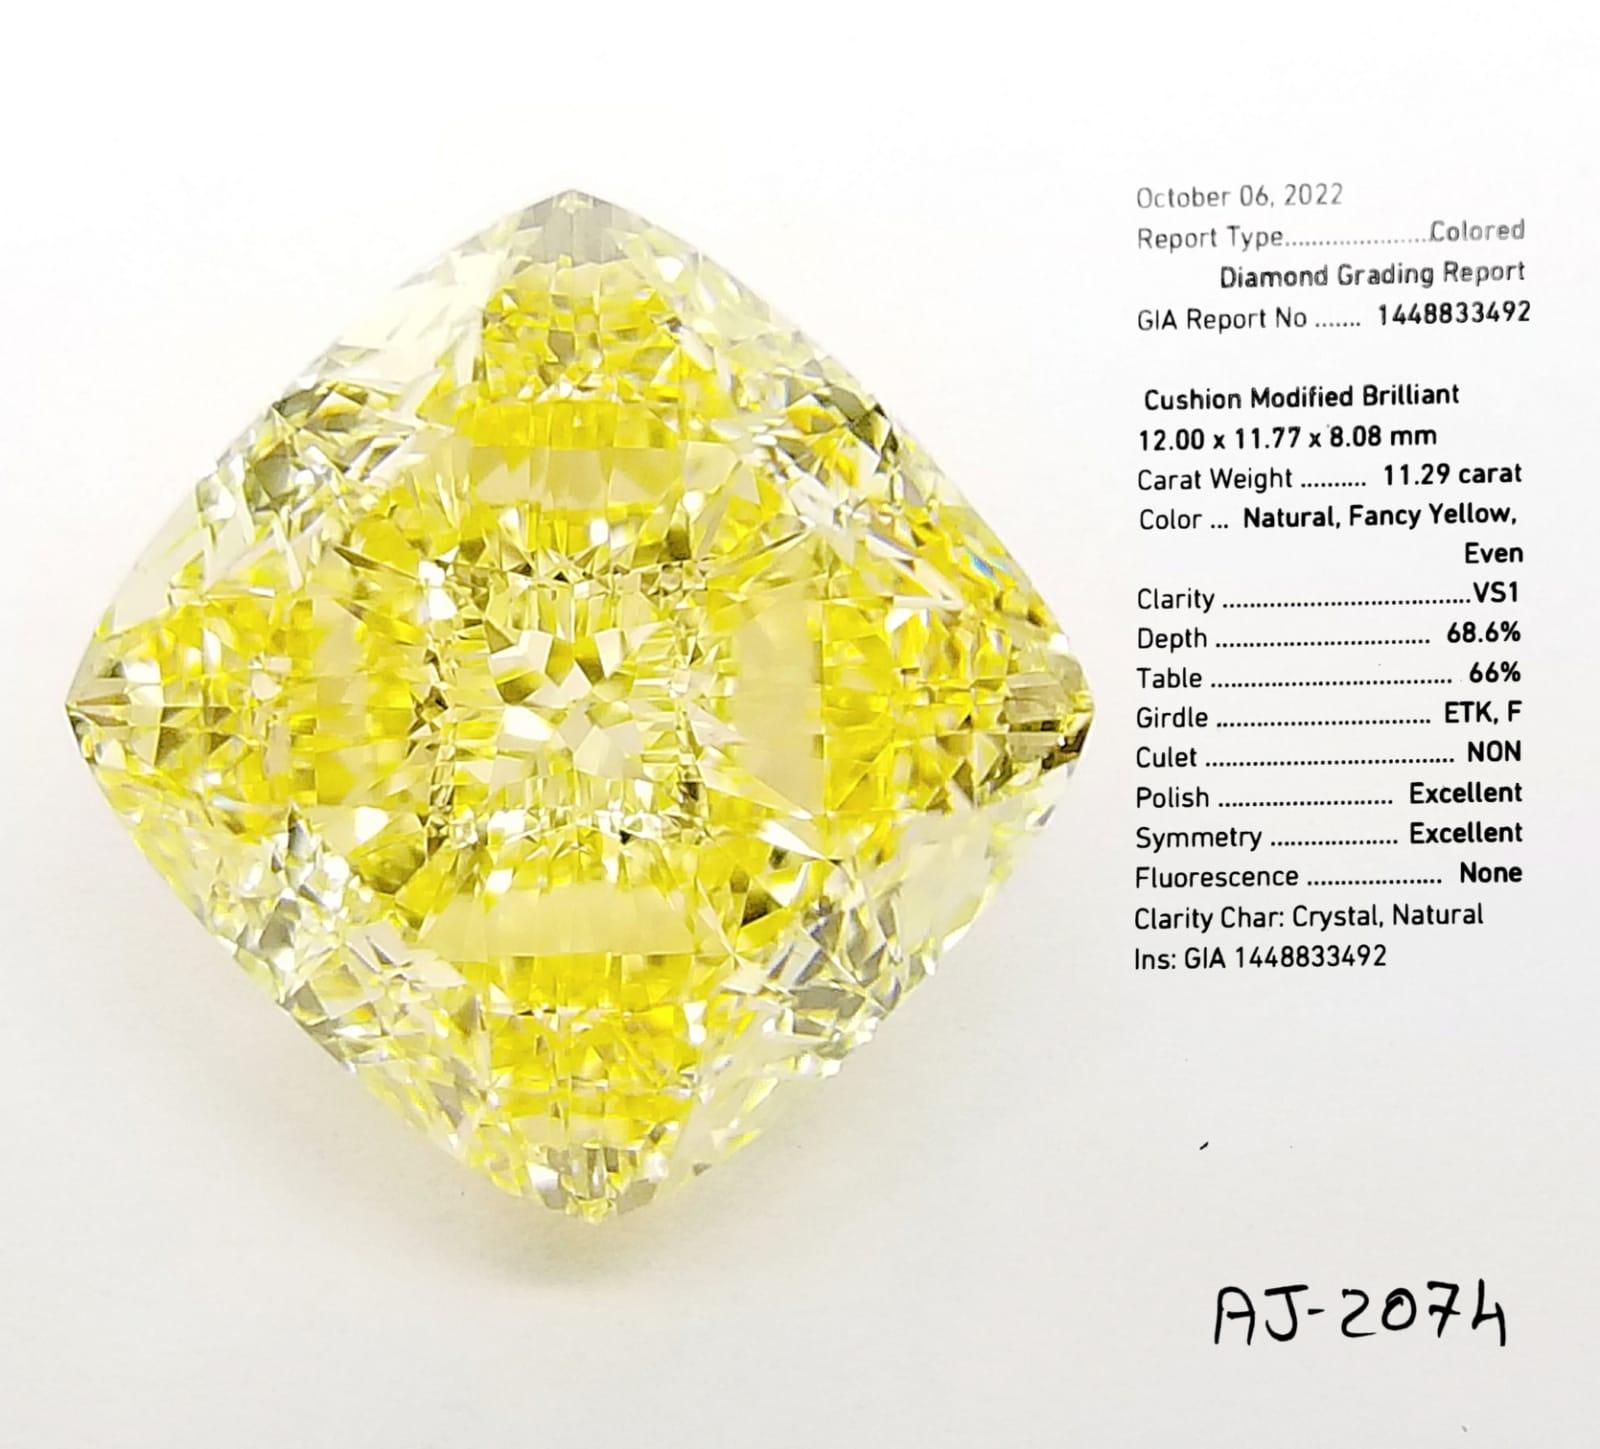 29 carat diamond price